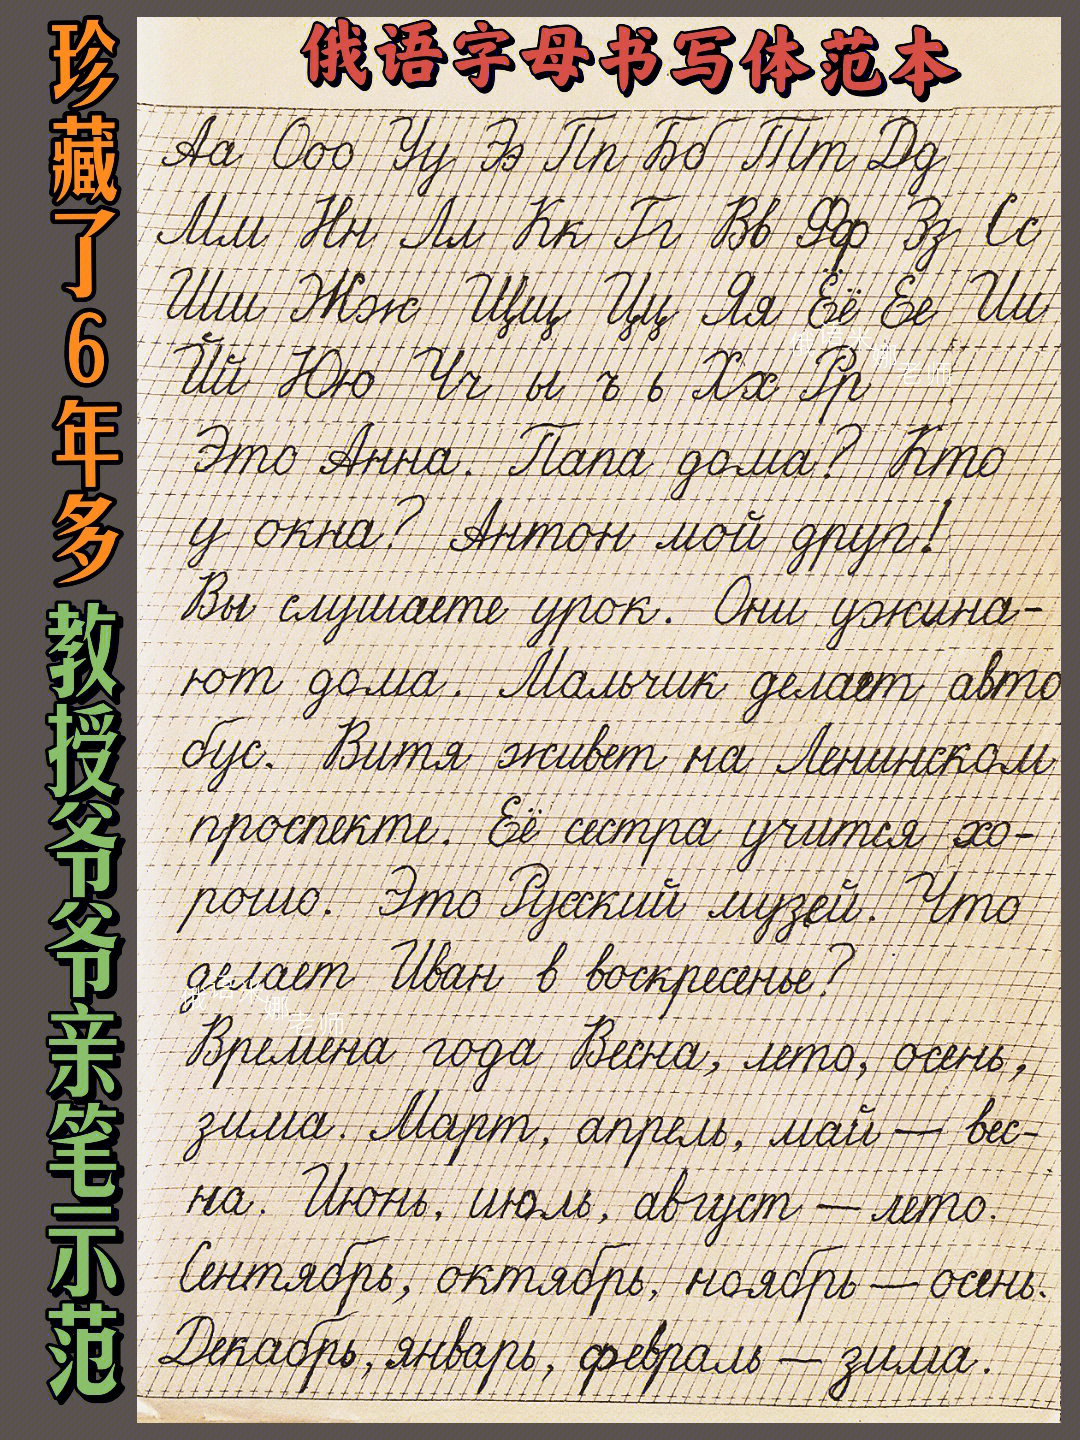 俄语字母及发音手写体图片